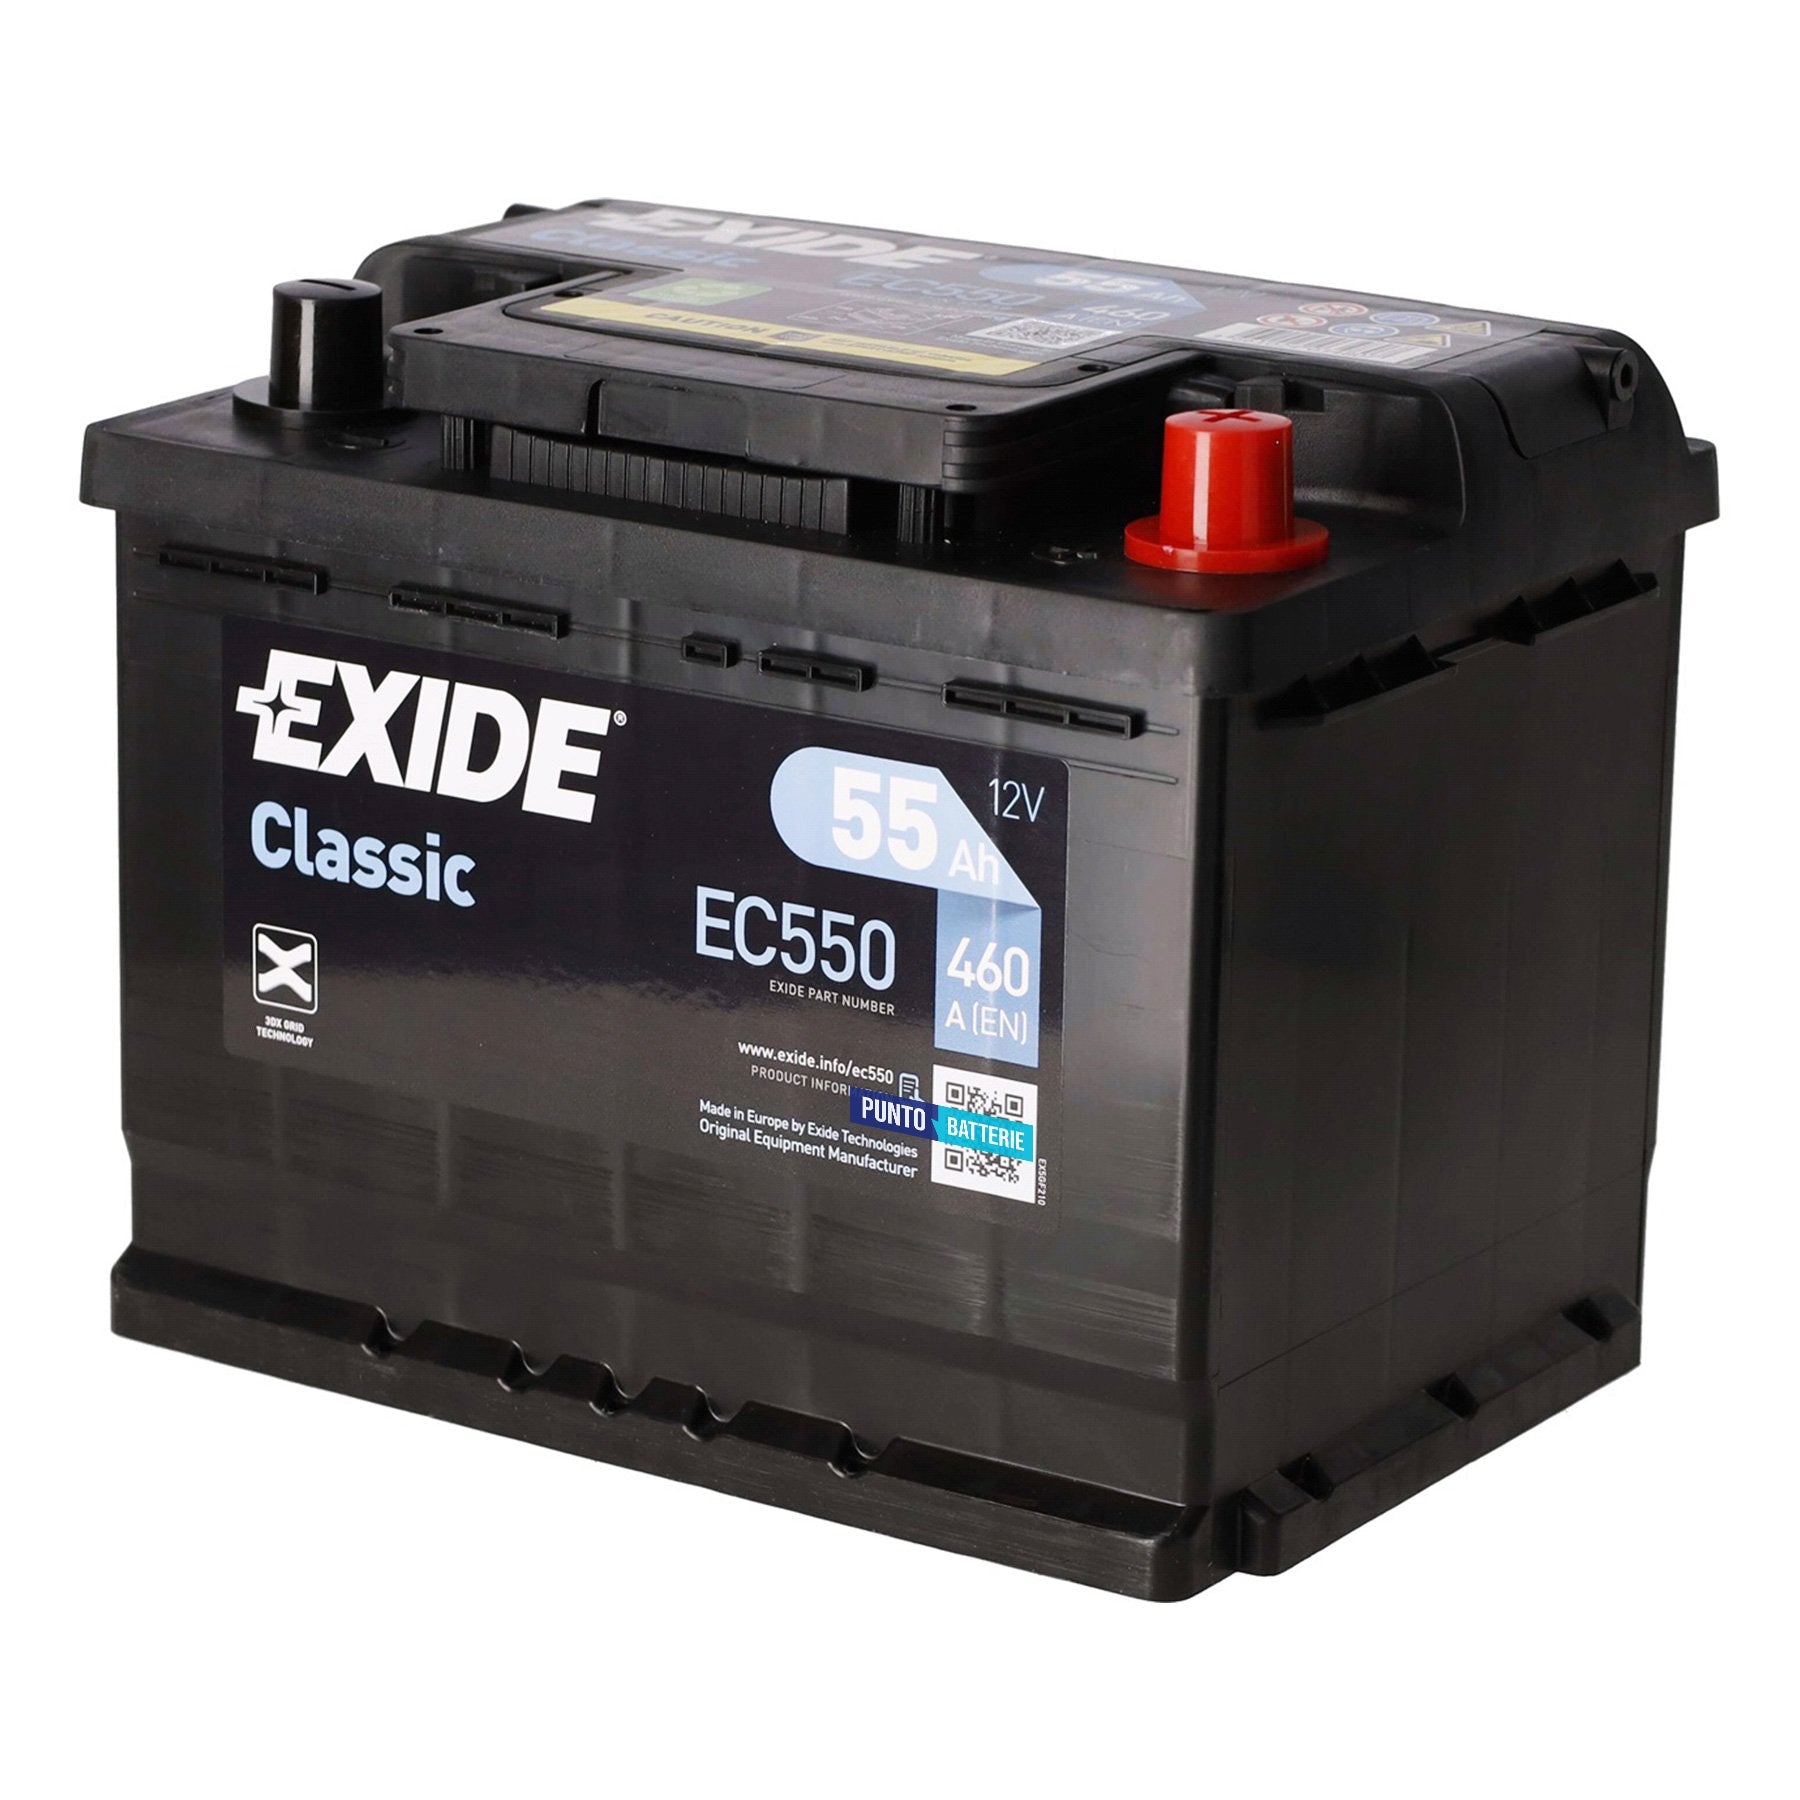 Batteria originale Exide Classic EC550, dimensioni 242 x 175 x 190, polo positivo a destra, 12 volt, 55 amperora, 460 ampere. Batteria per auto e veicoli leggeri.